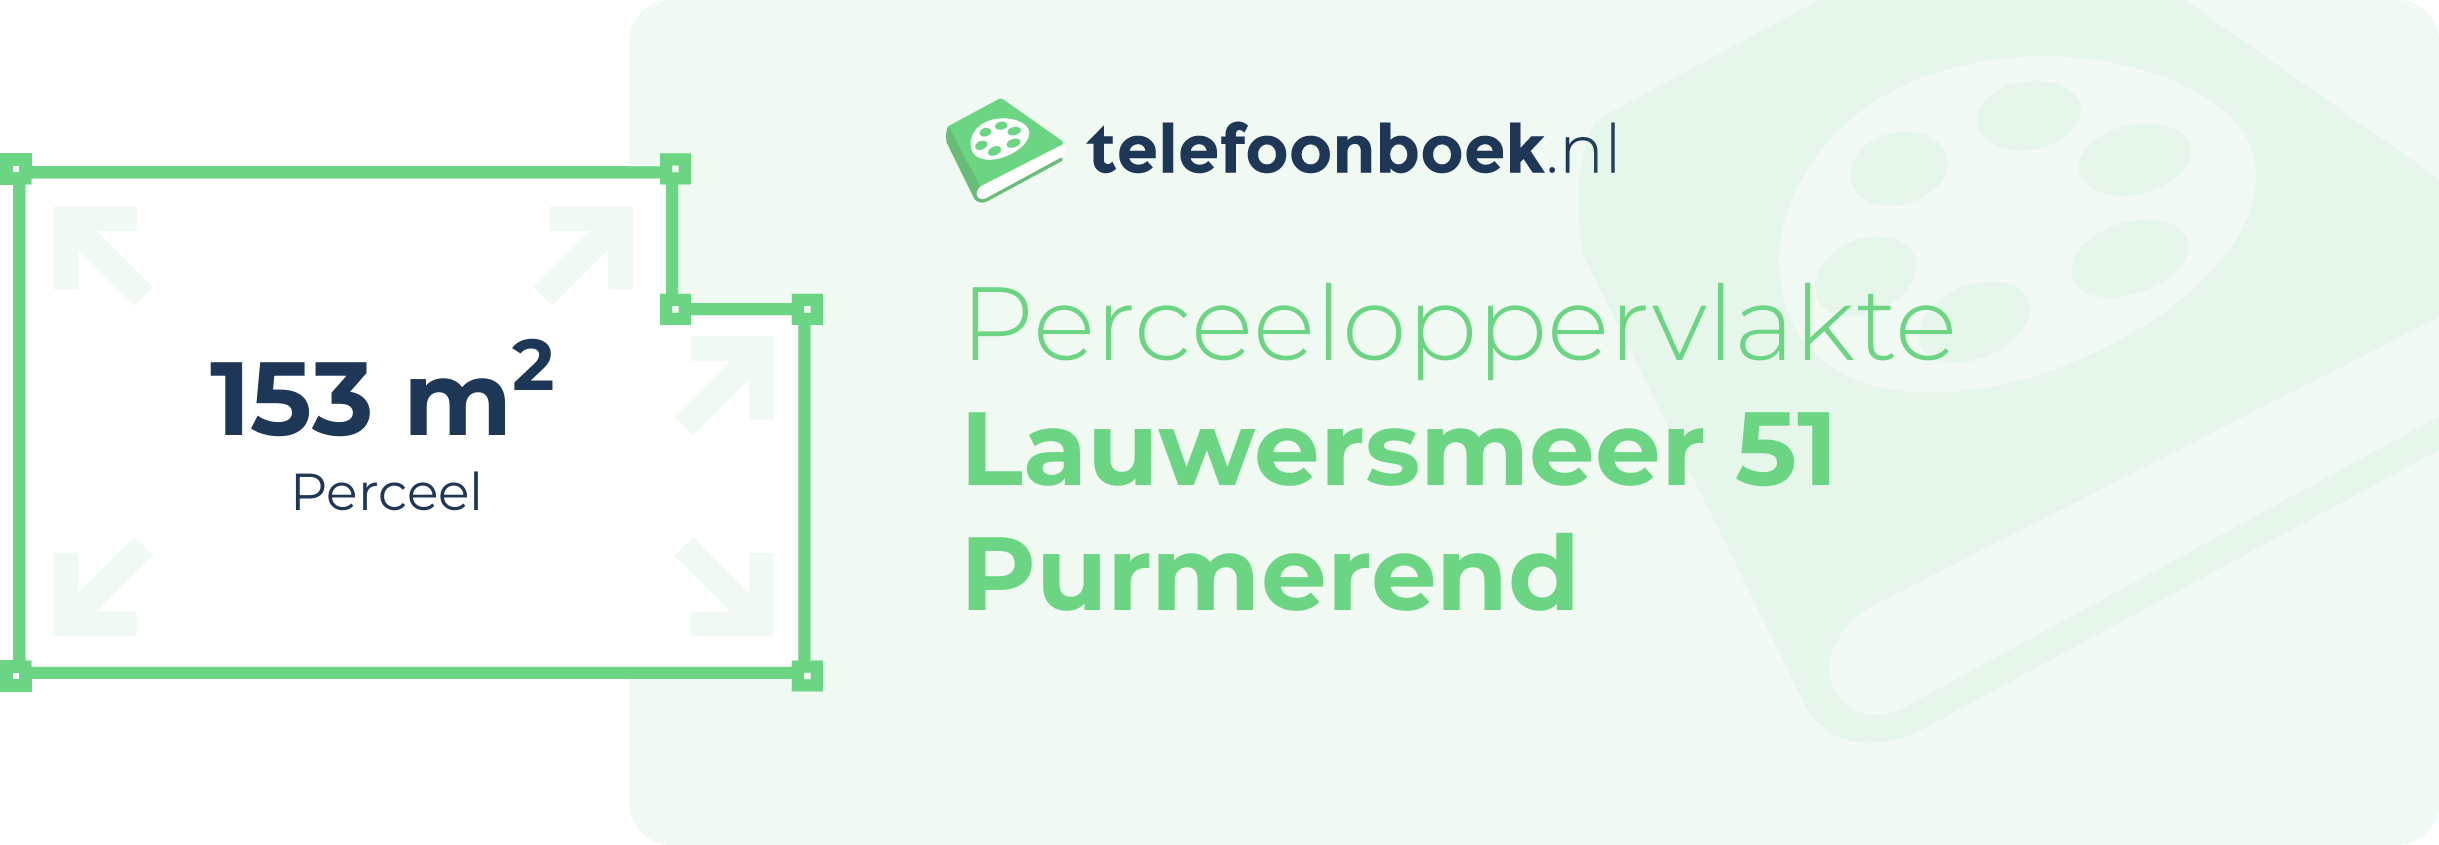 Perceeloppervlakte Lauwersmeer 51 Purmerend